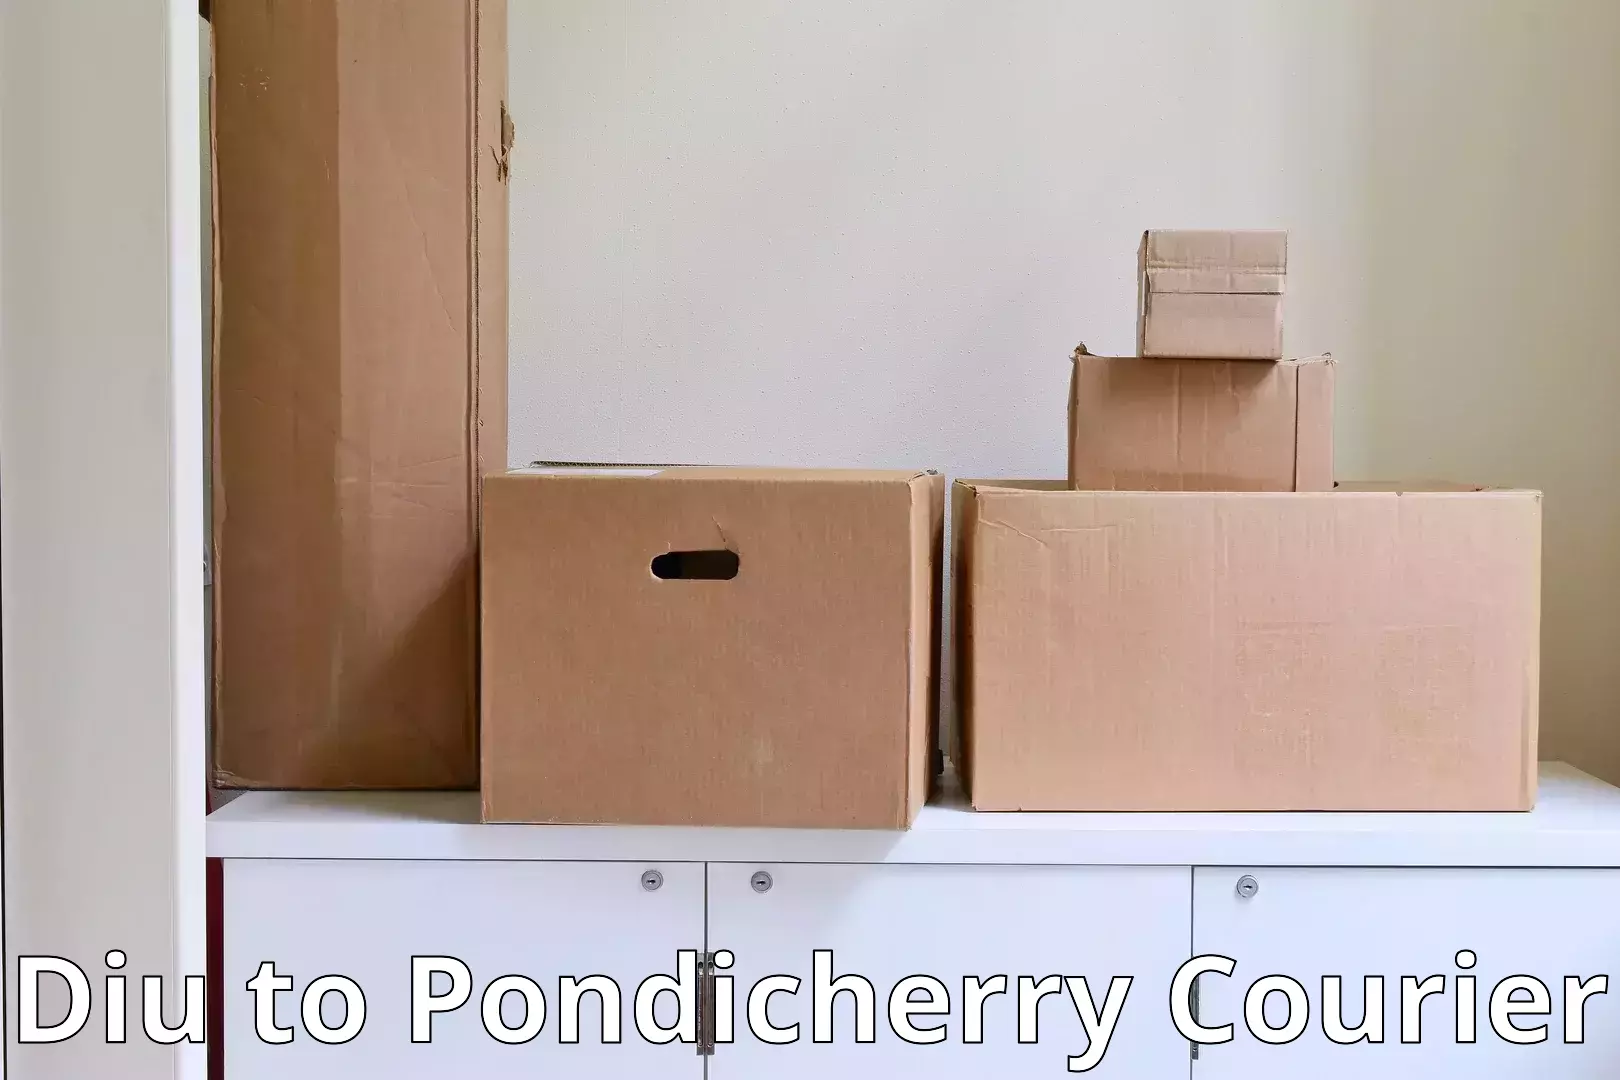 Furniture transport and logistics in Diu to Pondicherry